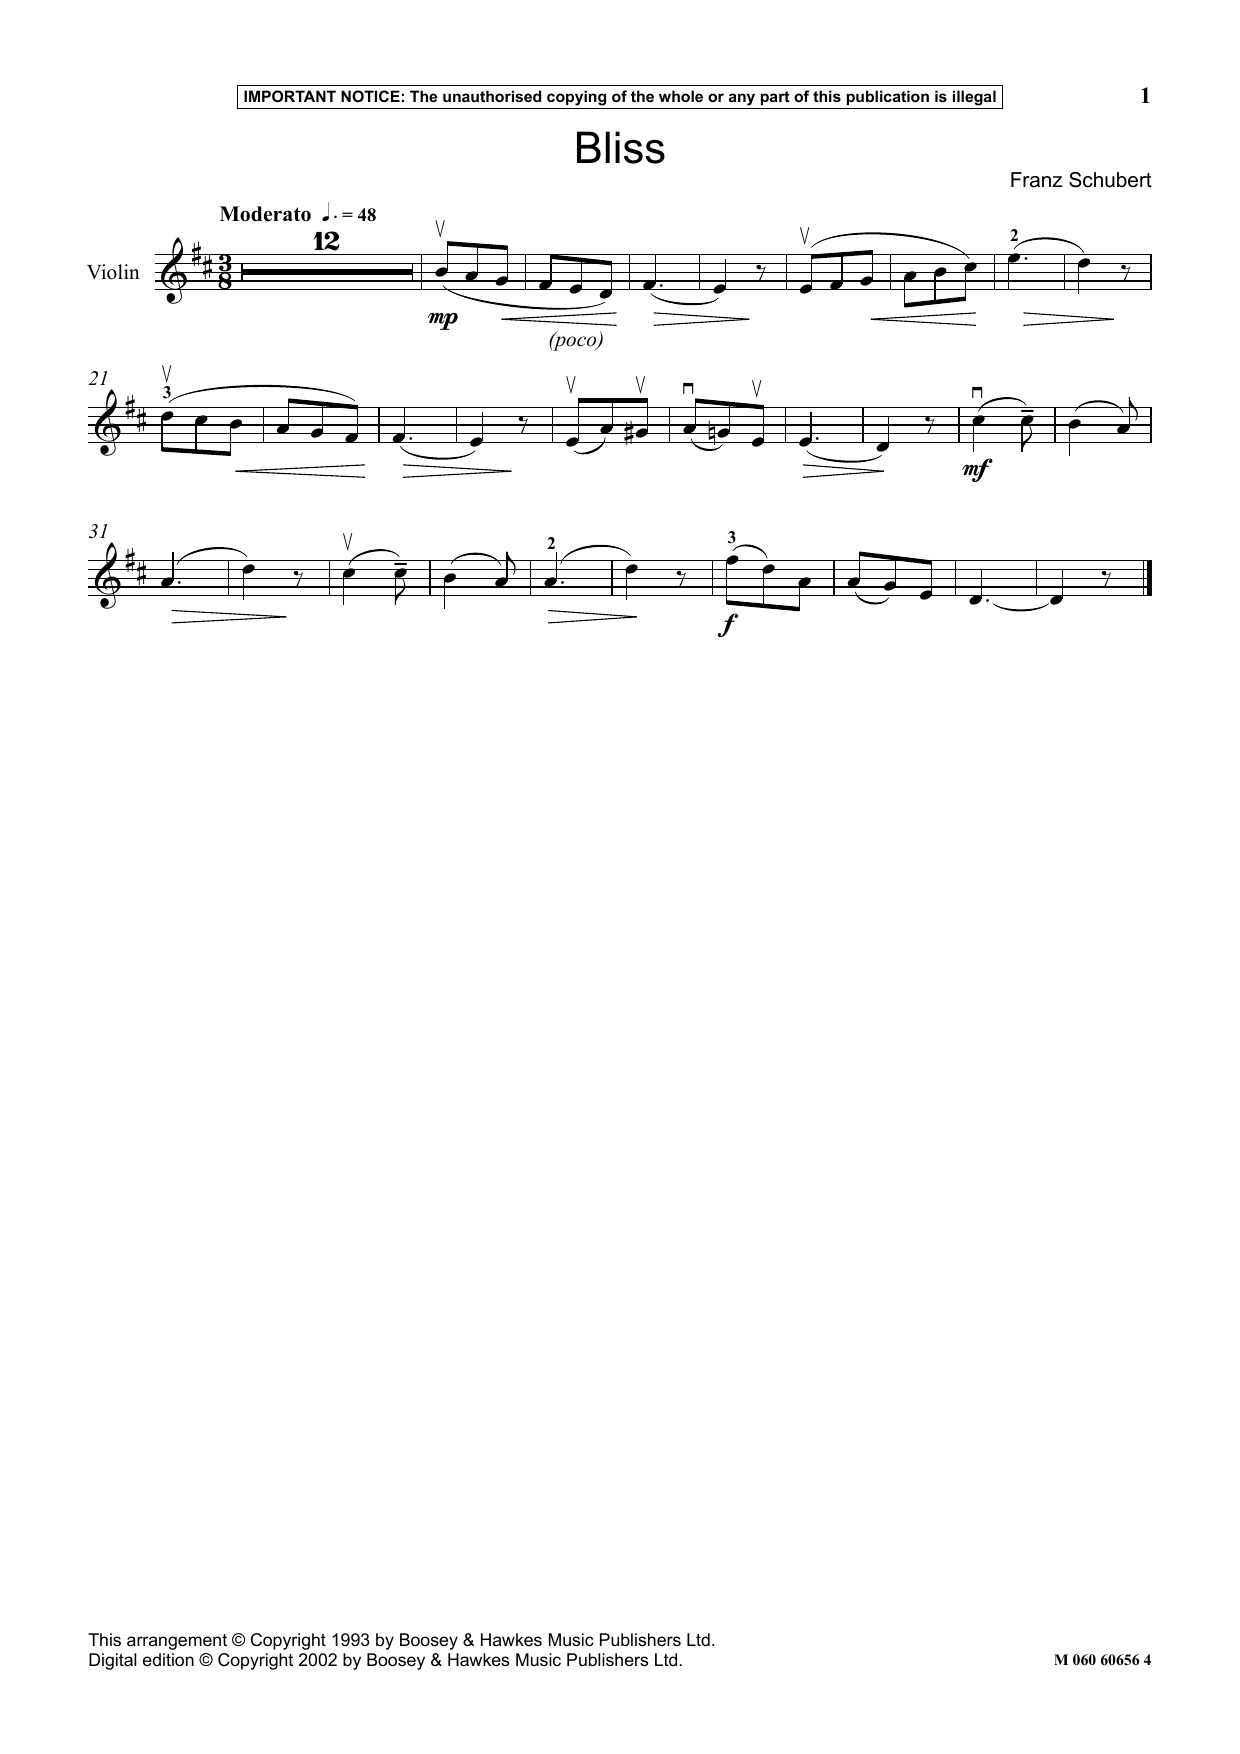 Download Franz Schubert Bliss Sheet Music